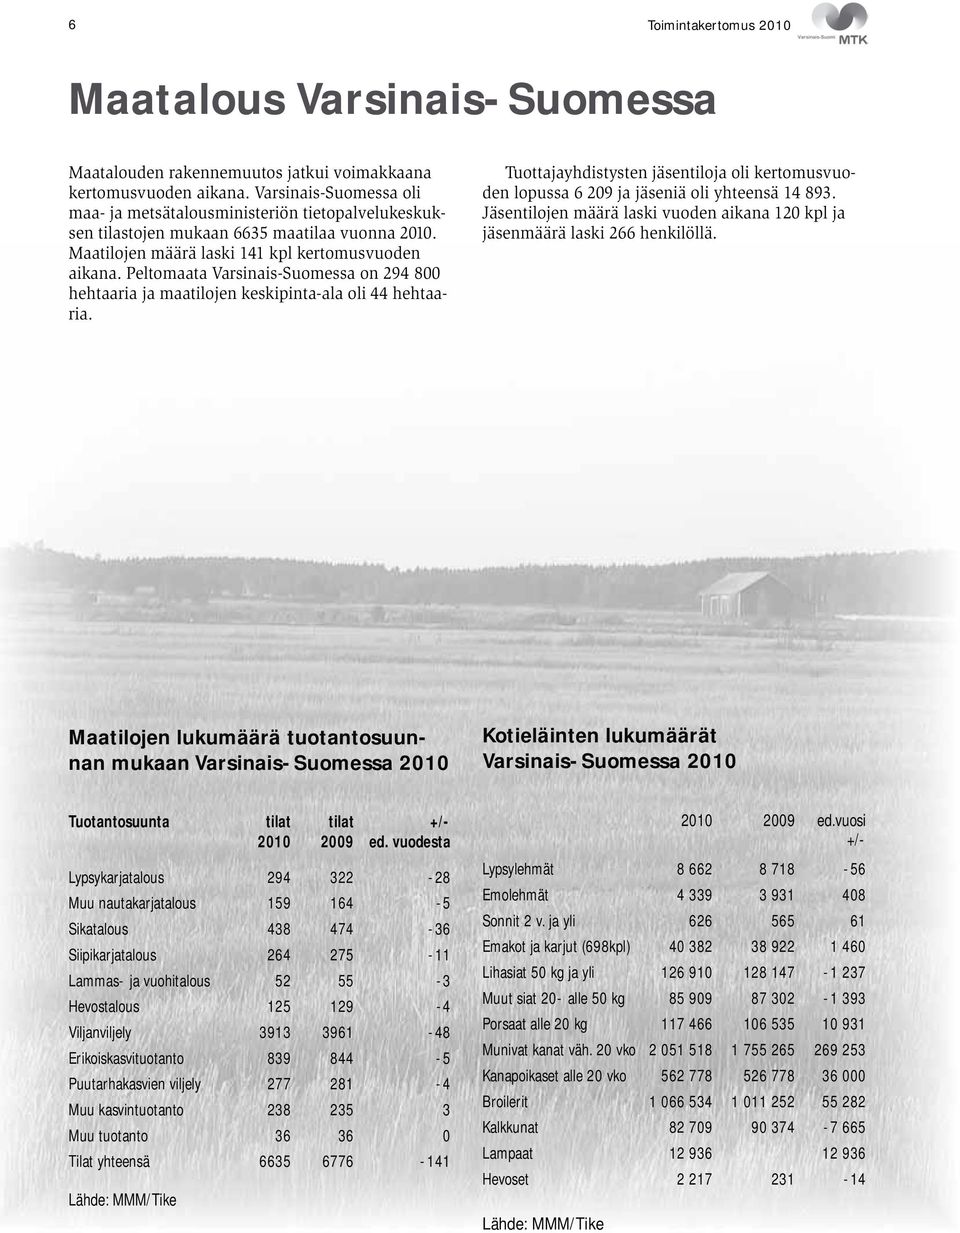 Peltomaata Varsinais-Suomessa on 294 800 hehtaaria ja maatilojen keskipinta-ala oli 44 hehtaaria. Tuottajayhdistysten jäsentiloja oli kertomusvuoden lopussa 6 209 ja jäseniä oli yhteensä 14 893.